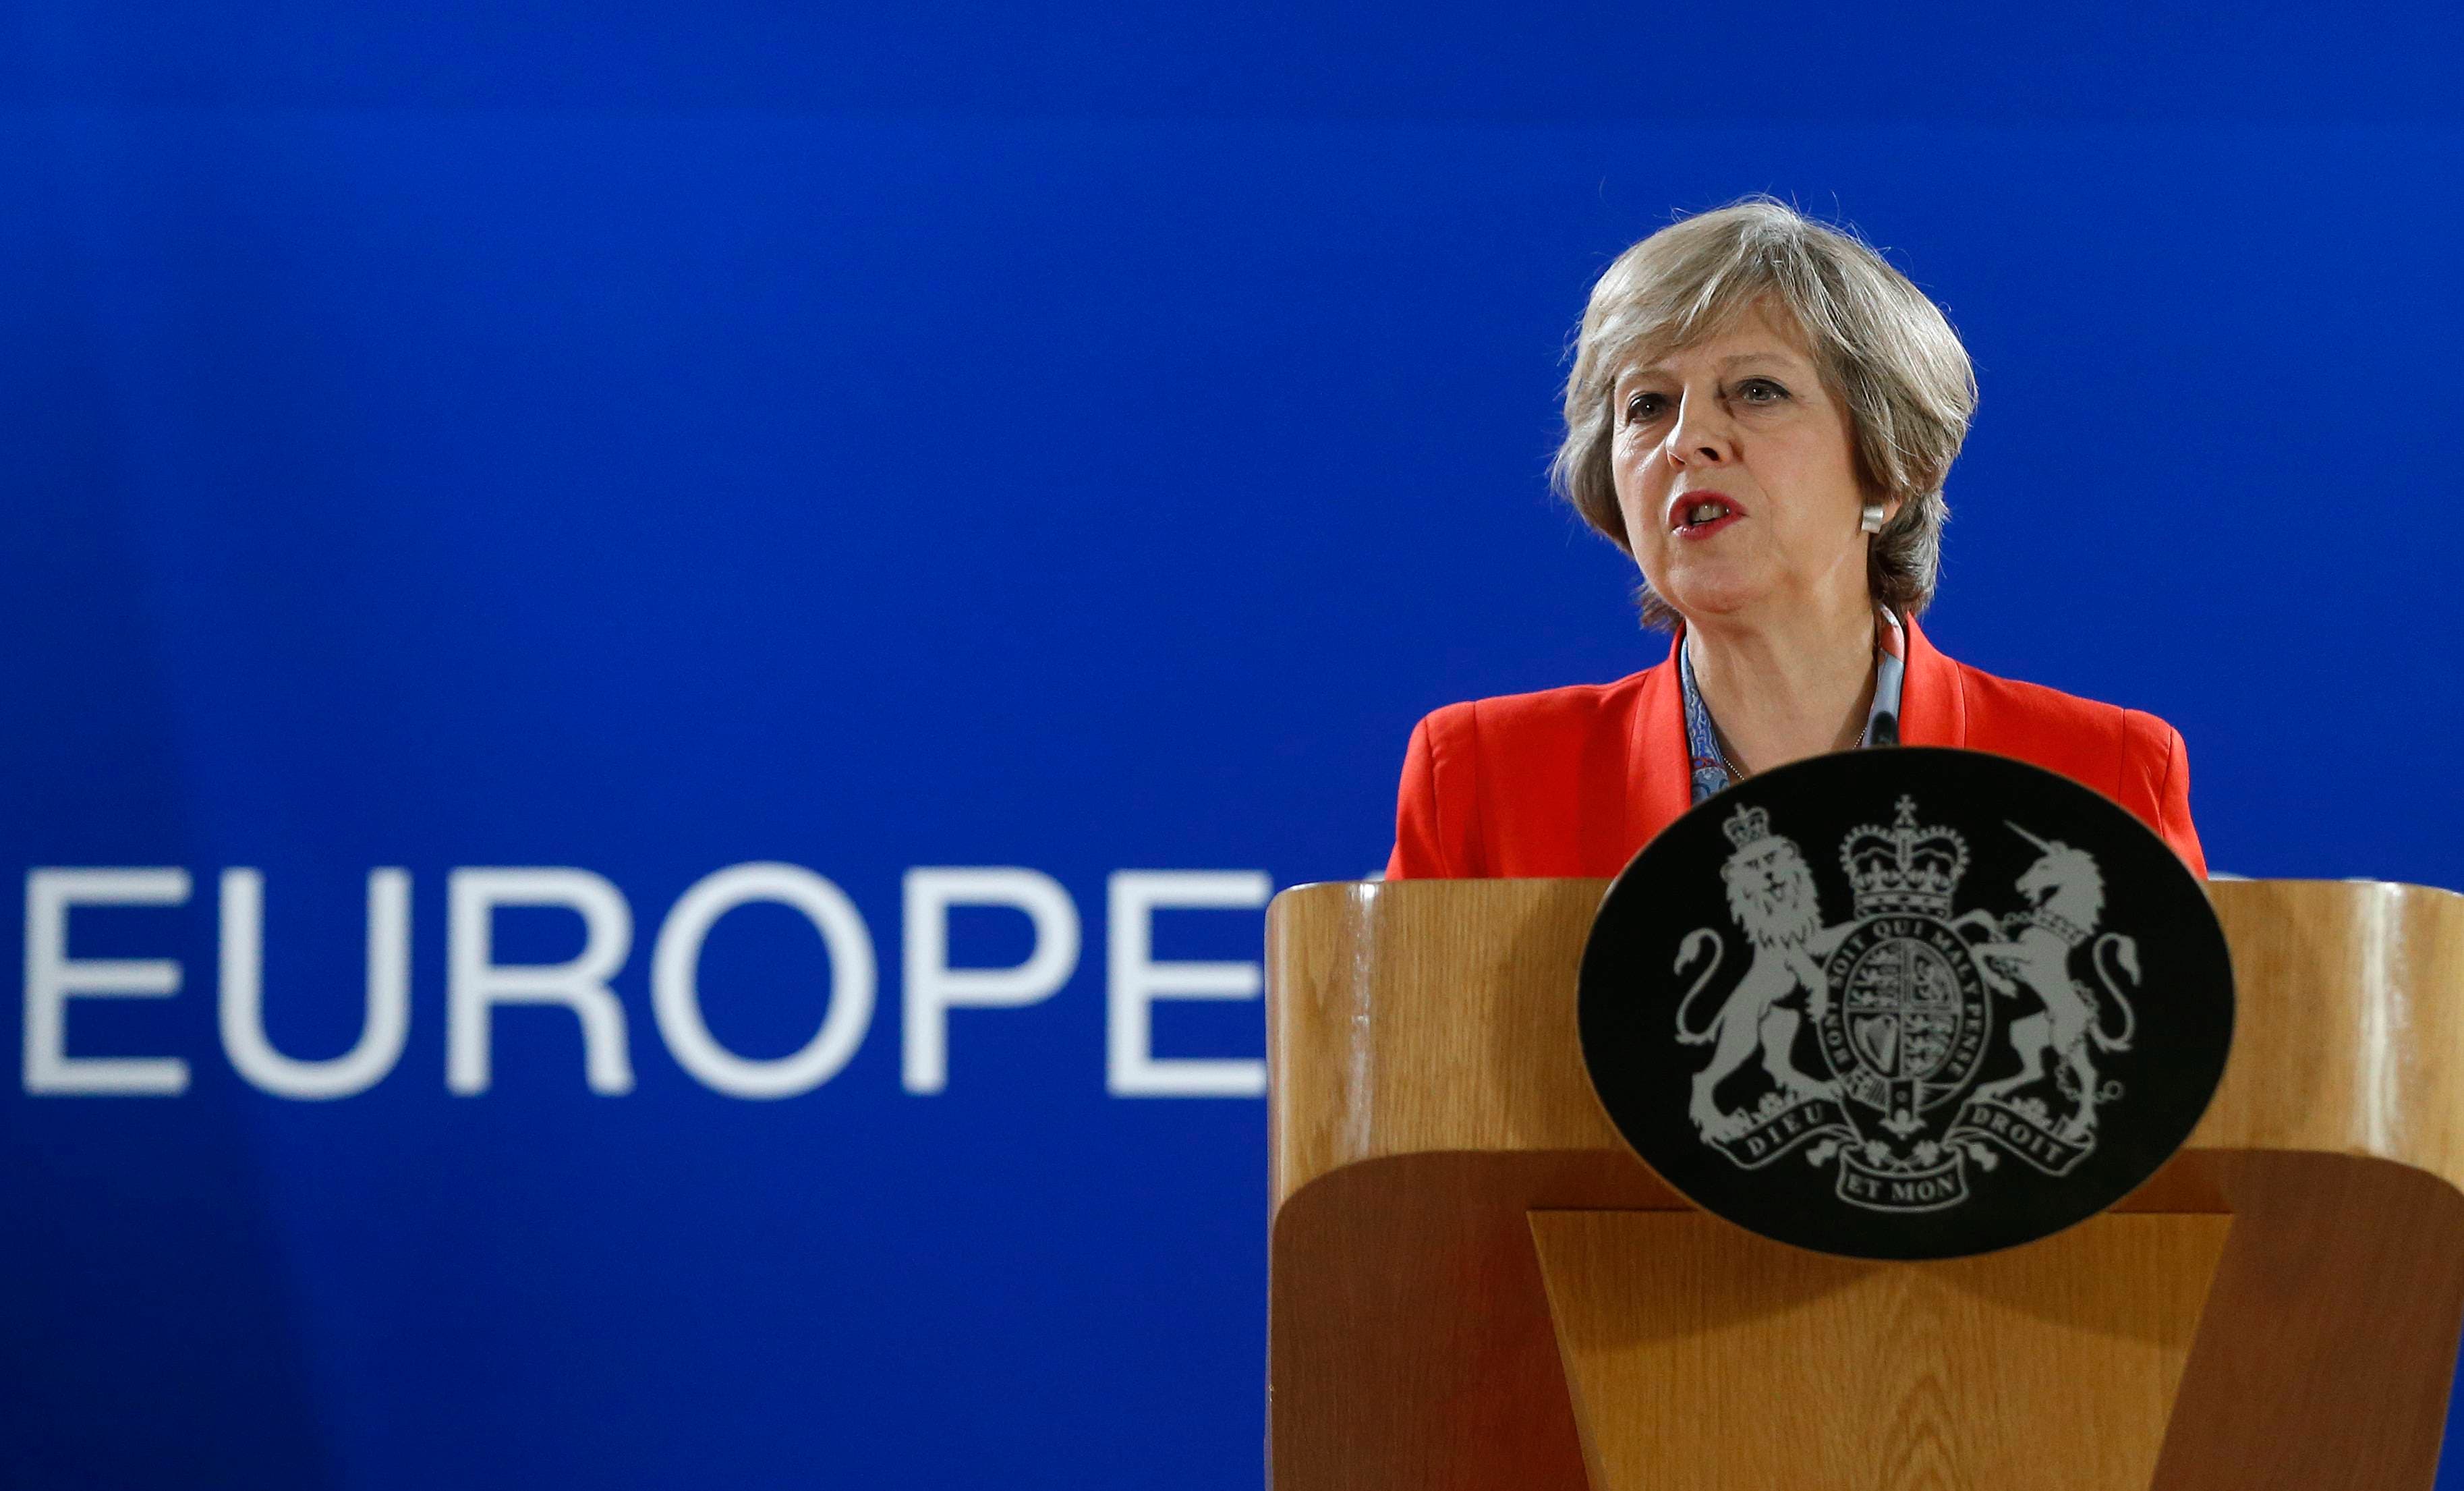 Una grabación filtrada destapa el temor al “brexit” que tenía Theresa May